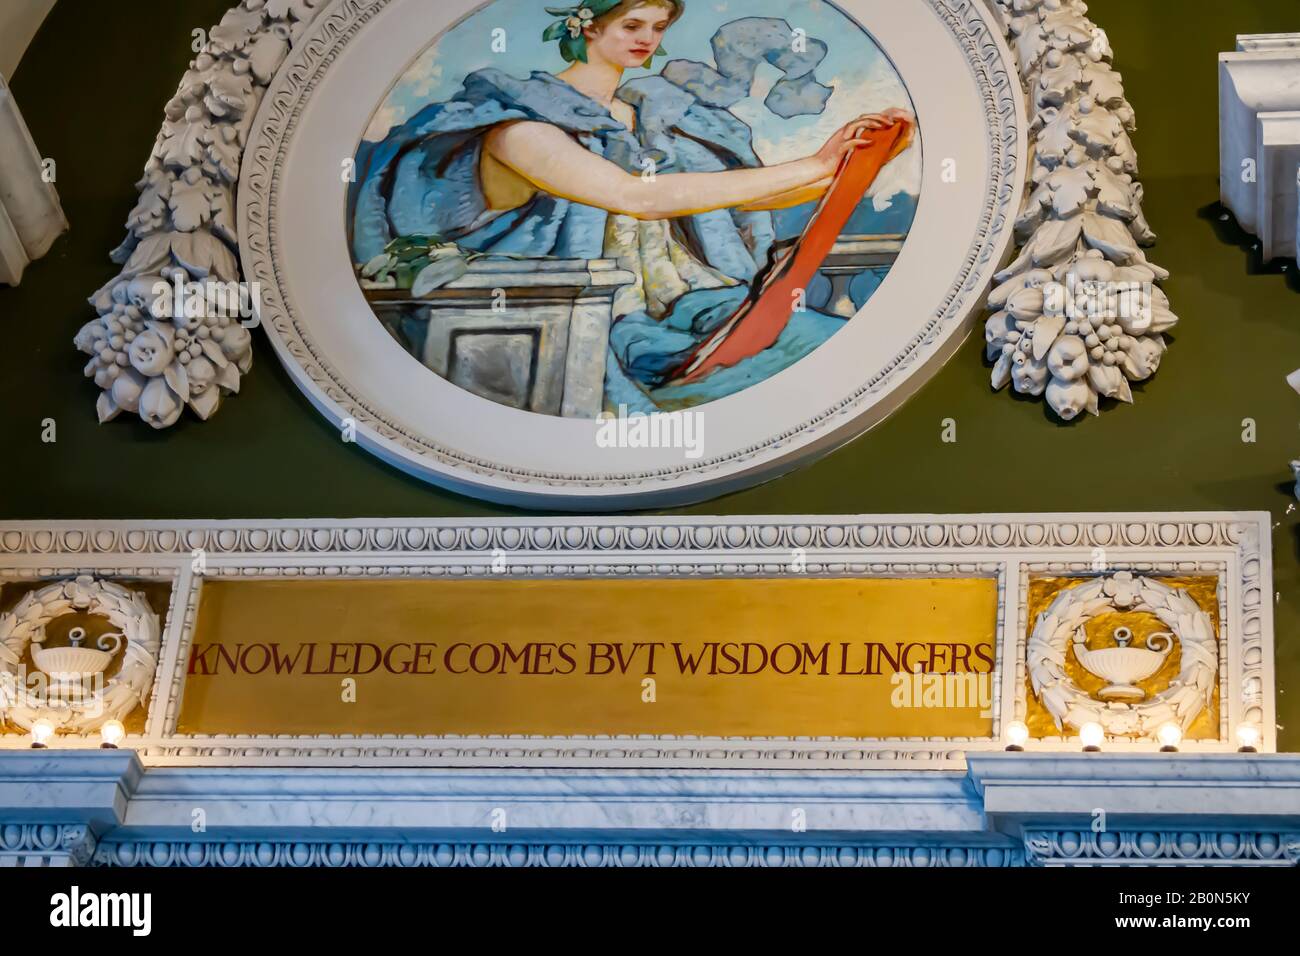 Washington, D.C. - 17. Januar 2020 - Interior der Library of Congress Thomas Jefferson Building Art Wandbild über Wissen und Weisheit. Stockfoto